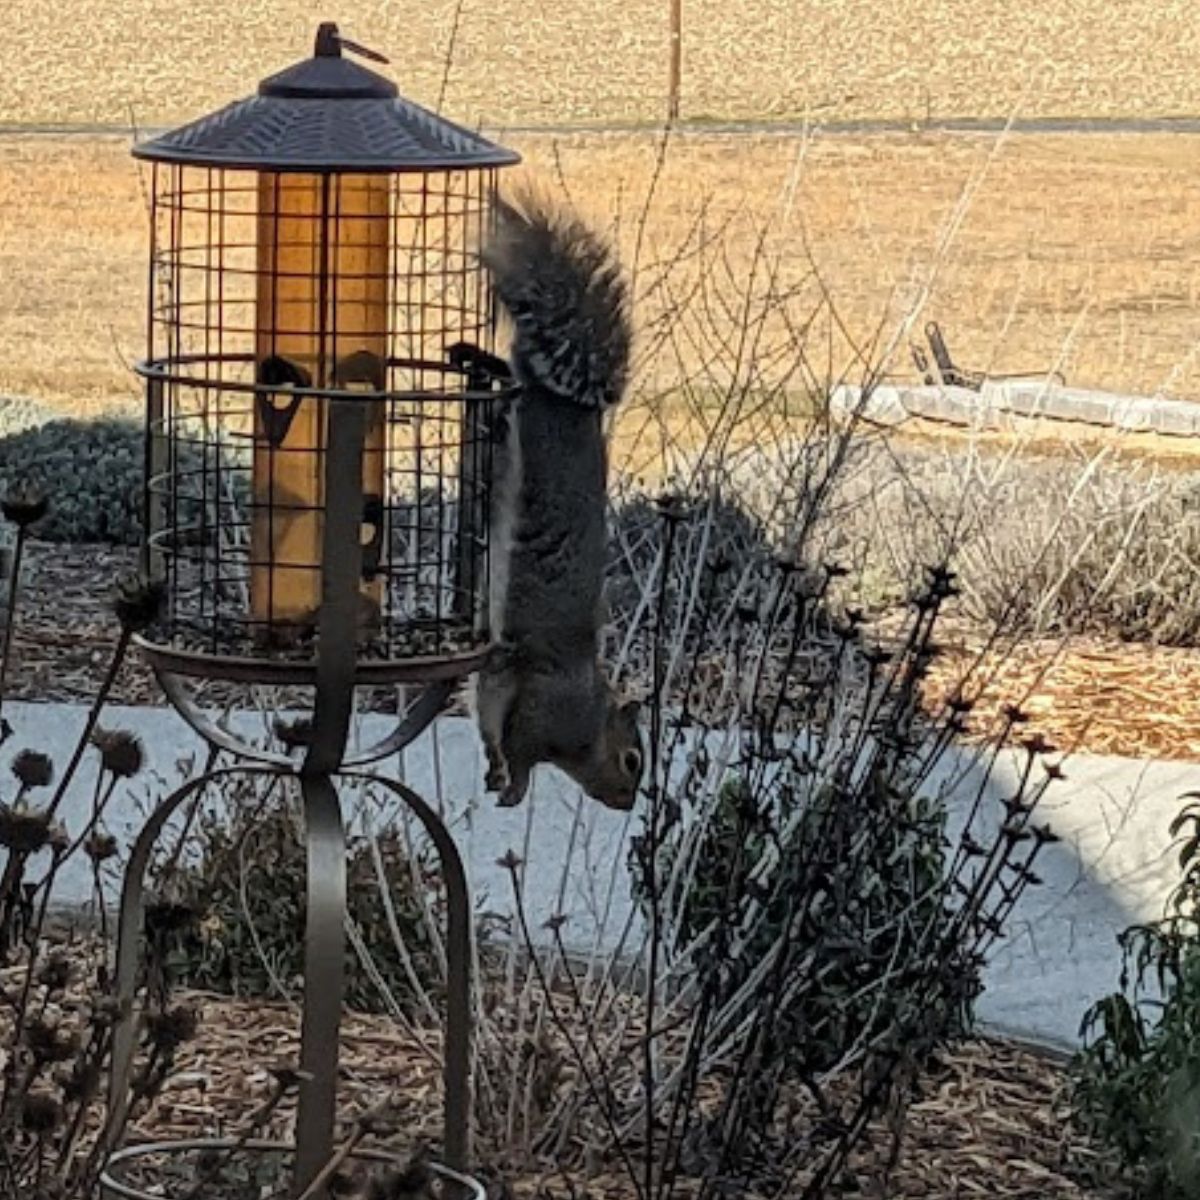 Upside down squirrel at the bird feeder.